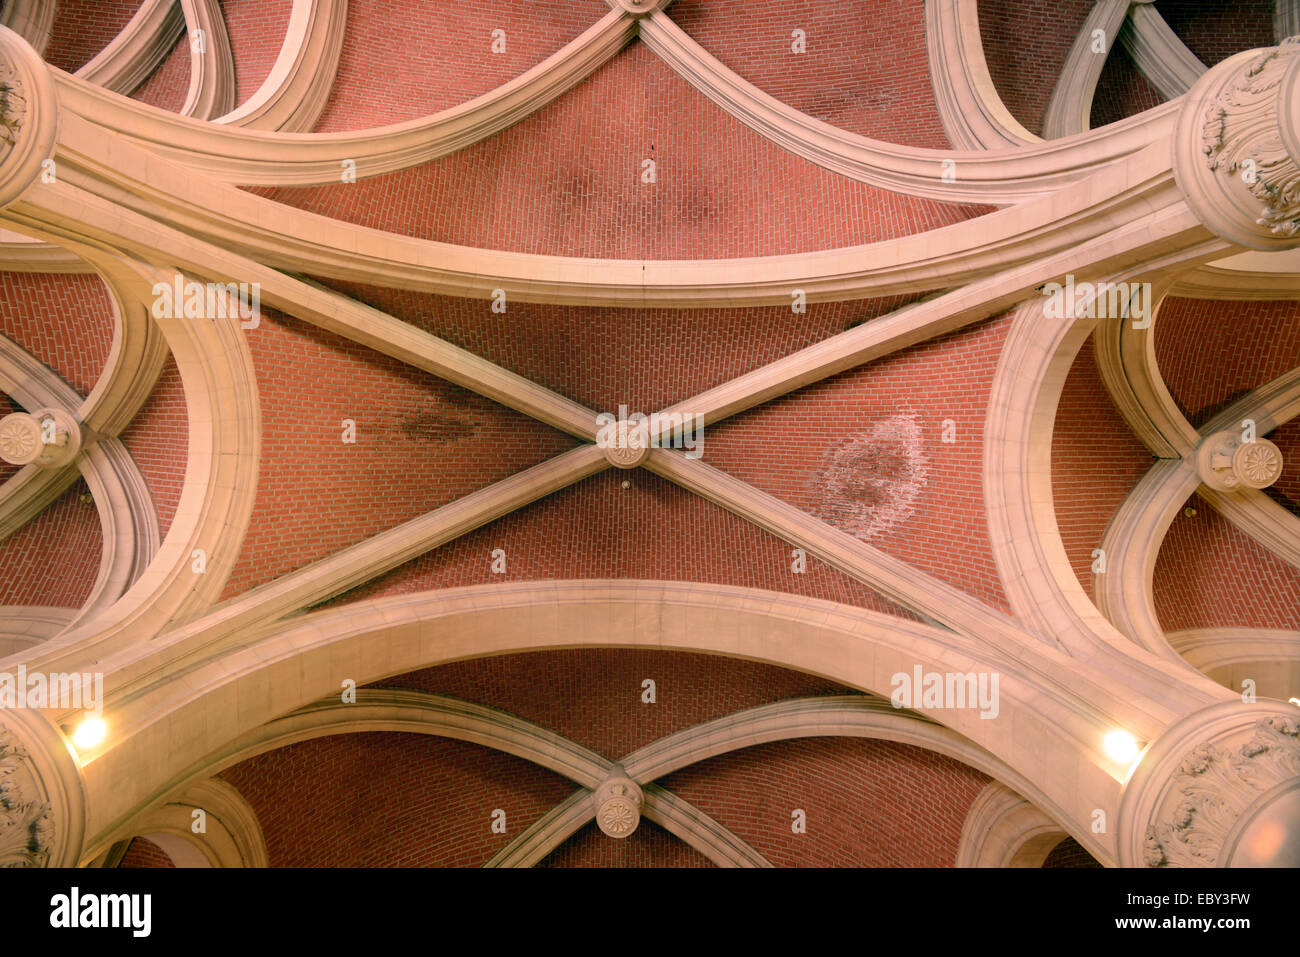 Plafond gothique nervurée du Musée des Augustins Musée dans l'ancien monastère des Augustins TOULOUSE Haute-Garonne France Banque D'Images